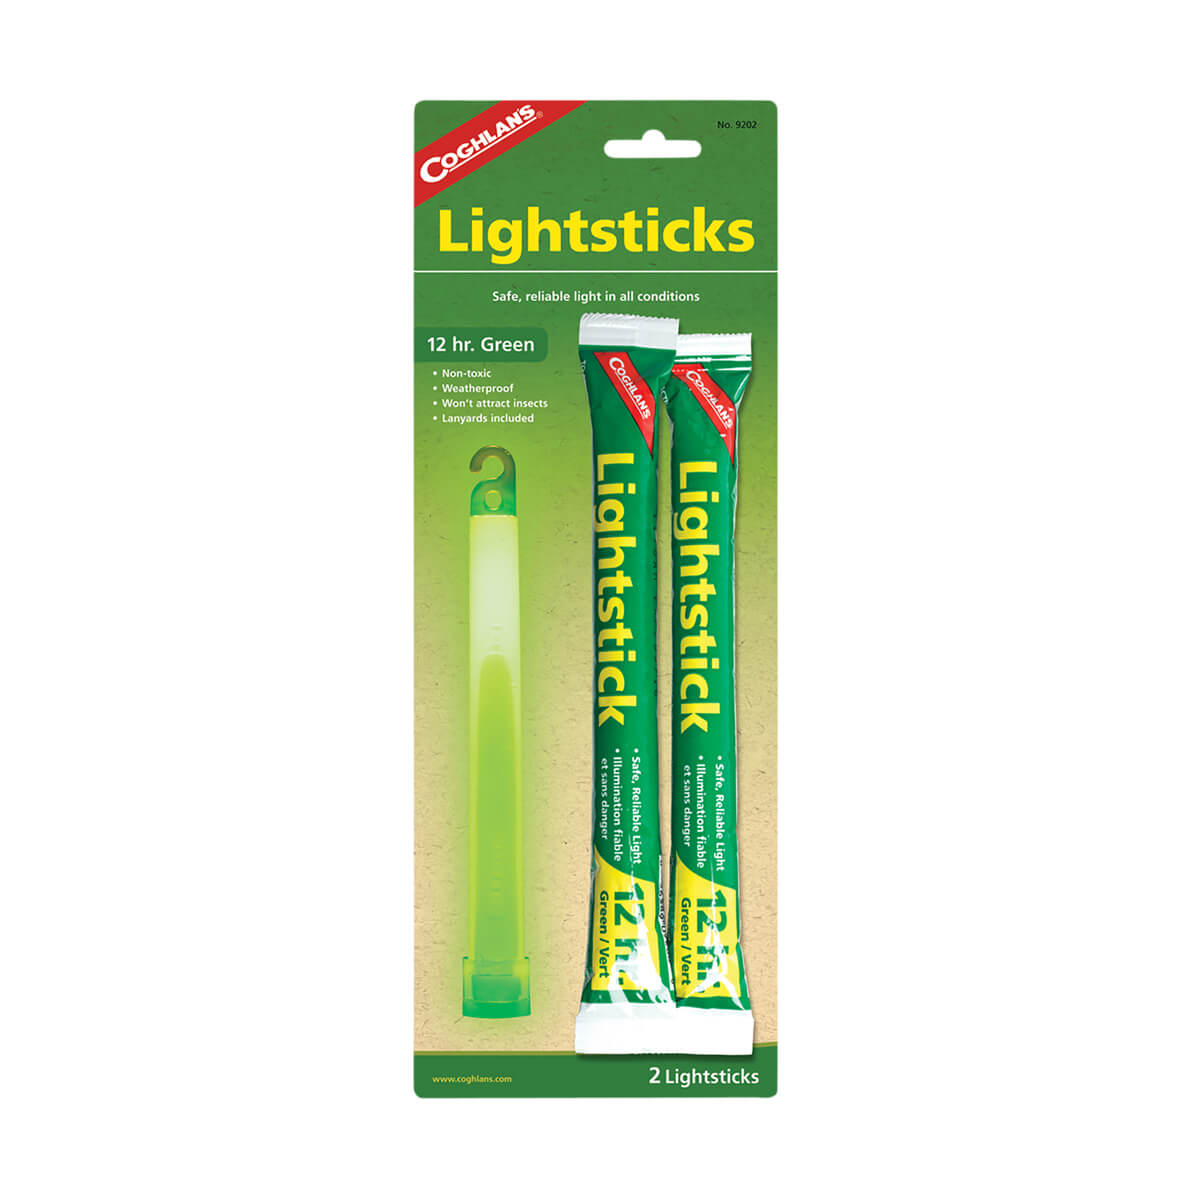 Lightsticks - Green